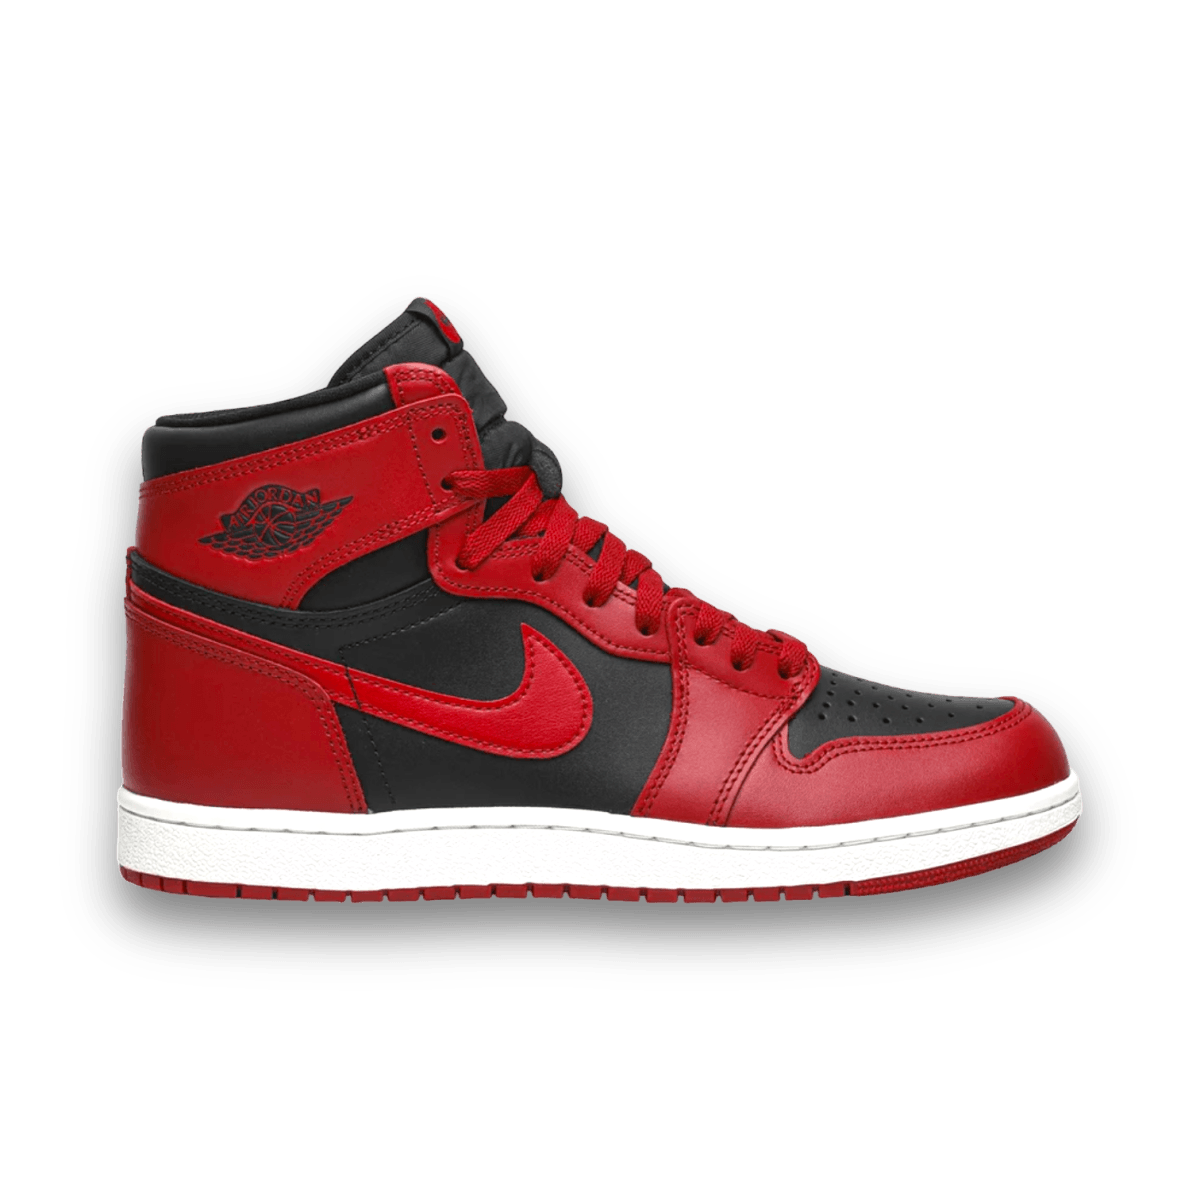 Air Jordan 1 Retro High '85 'Varsity Red' - High Sneaker - Jawns on Fire Sneakers & Streetwear